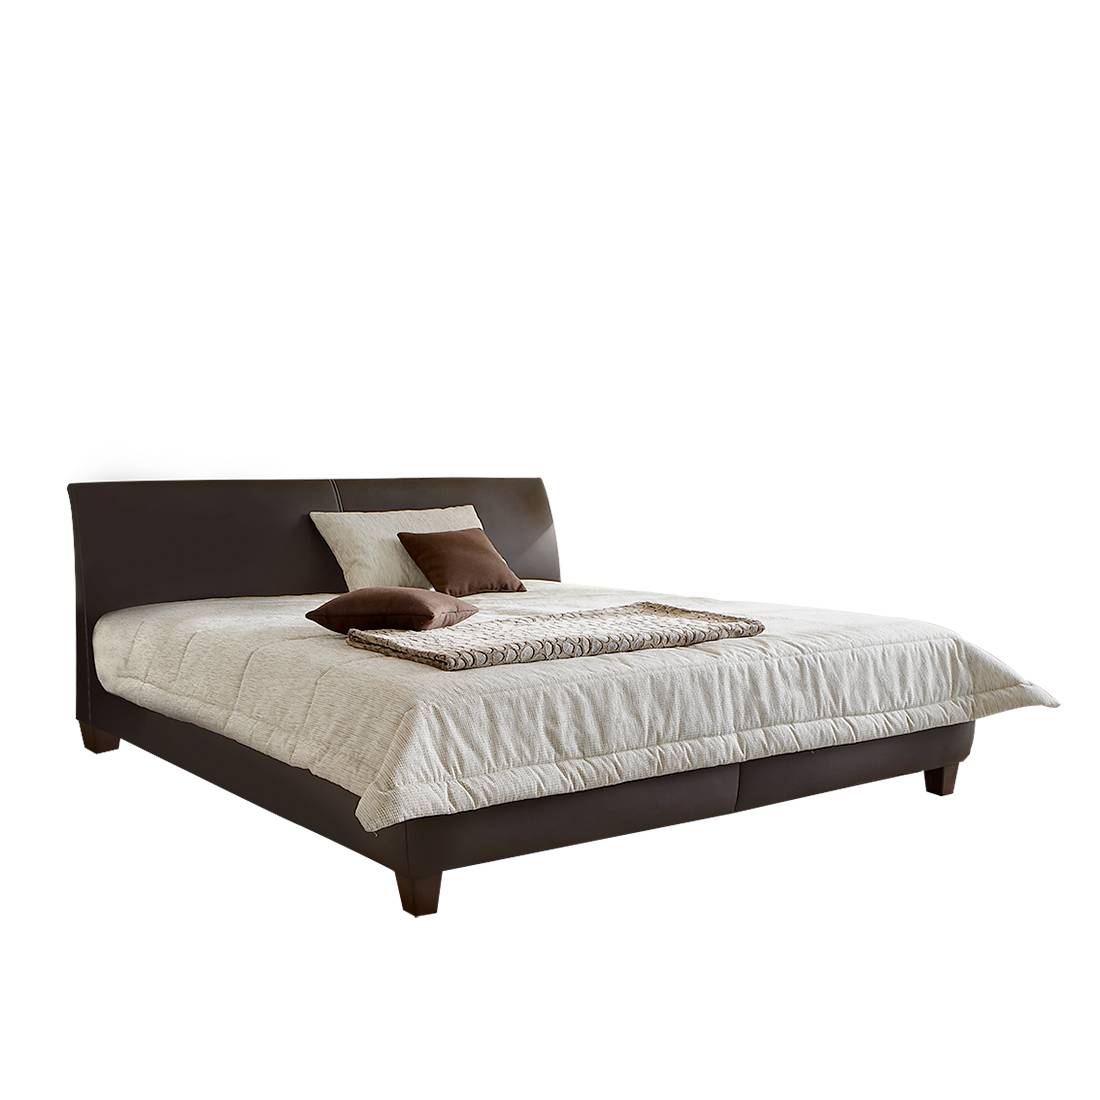 goedkoop Gestoffeerd bed Skye bordeaux kunstleer 180 x 200cm Bedframe zonder matras & lattenbodem Bruin Monaco